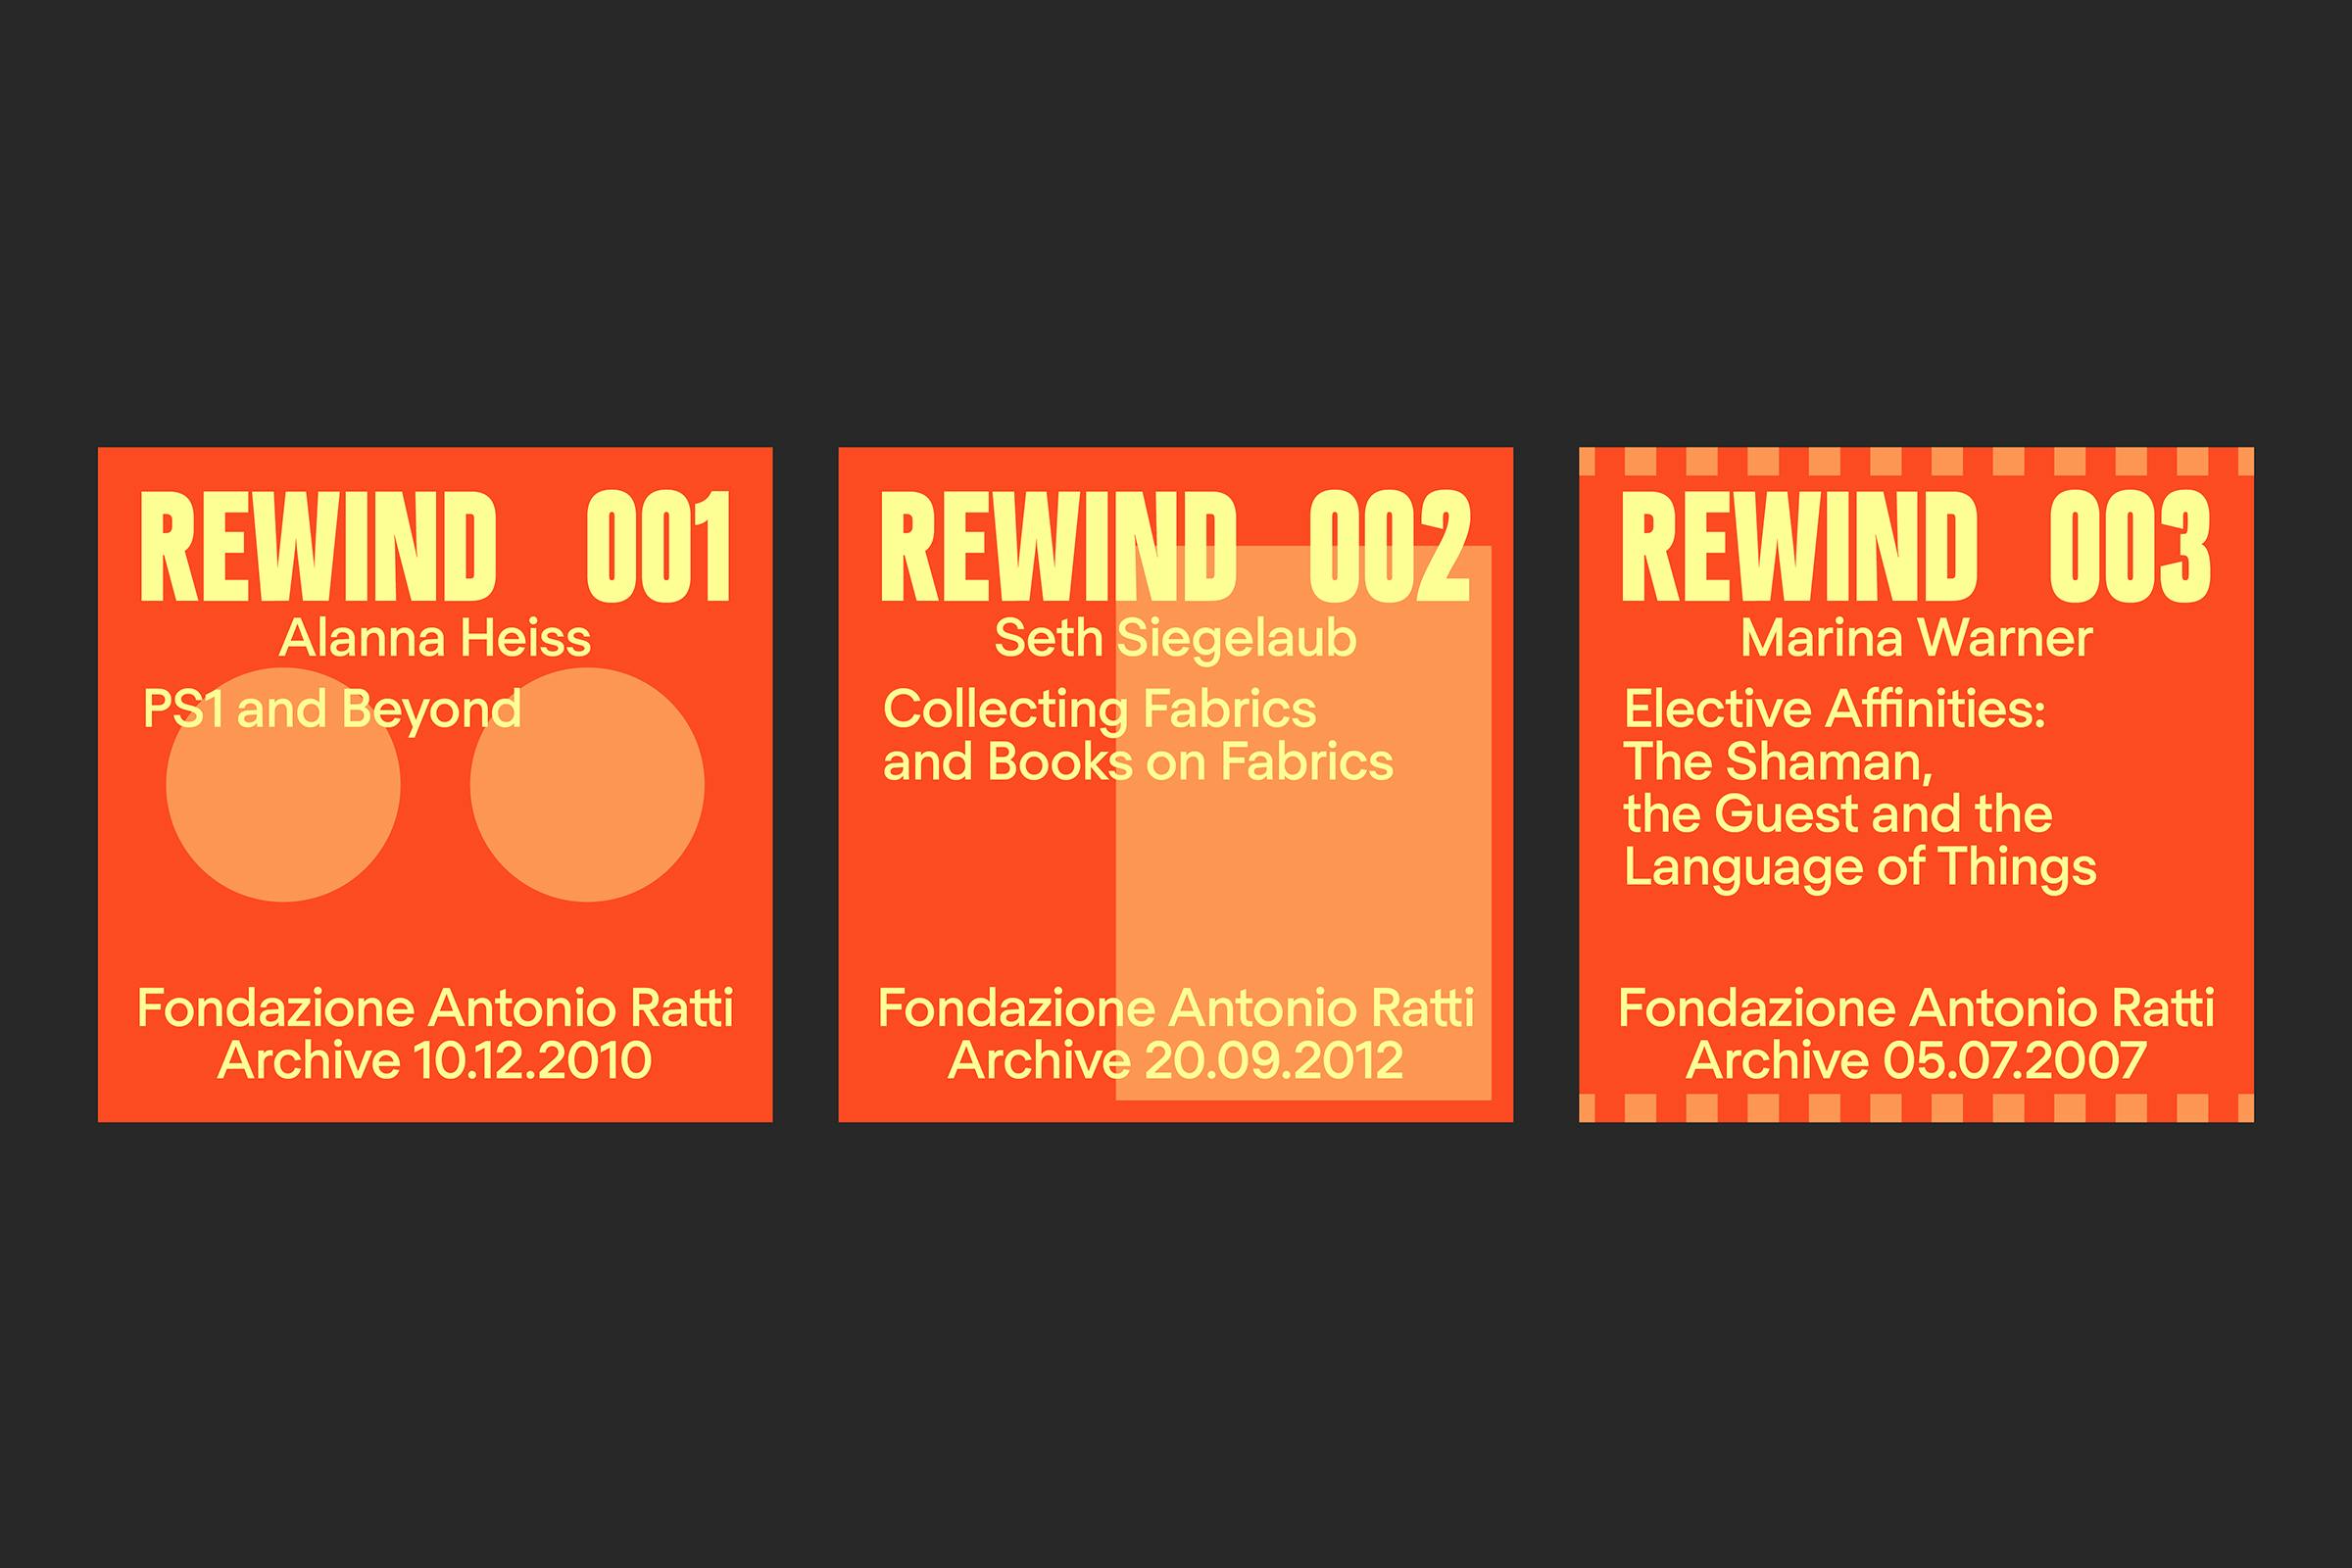 Fondazione Antionio Ratti, REWIND, Campaign Identity, Graphic Design by Wolfe Hall